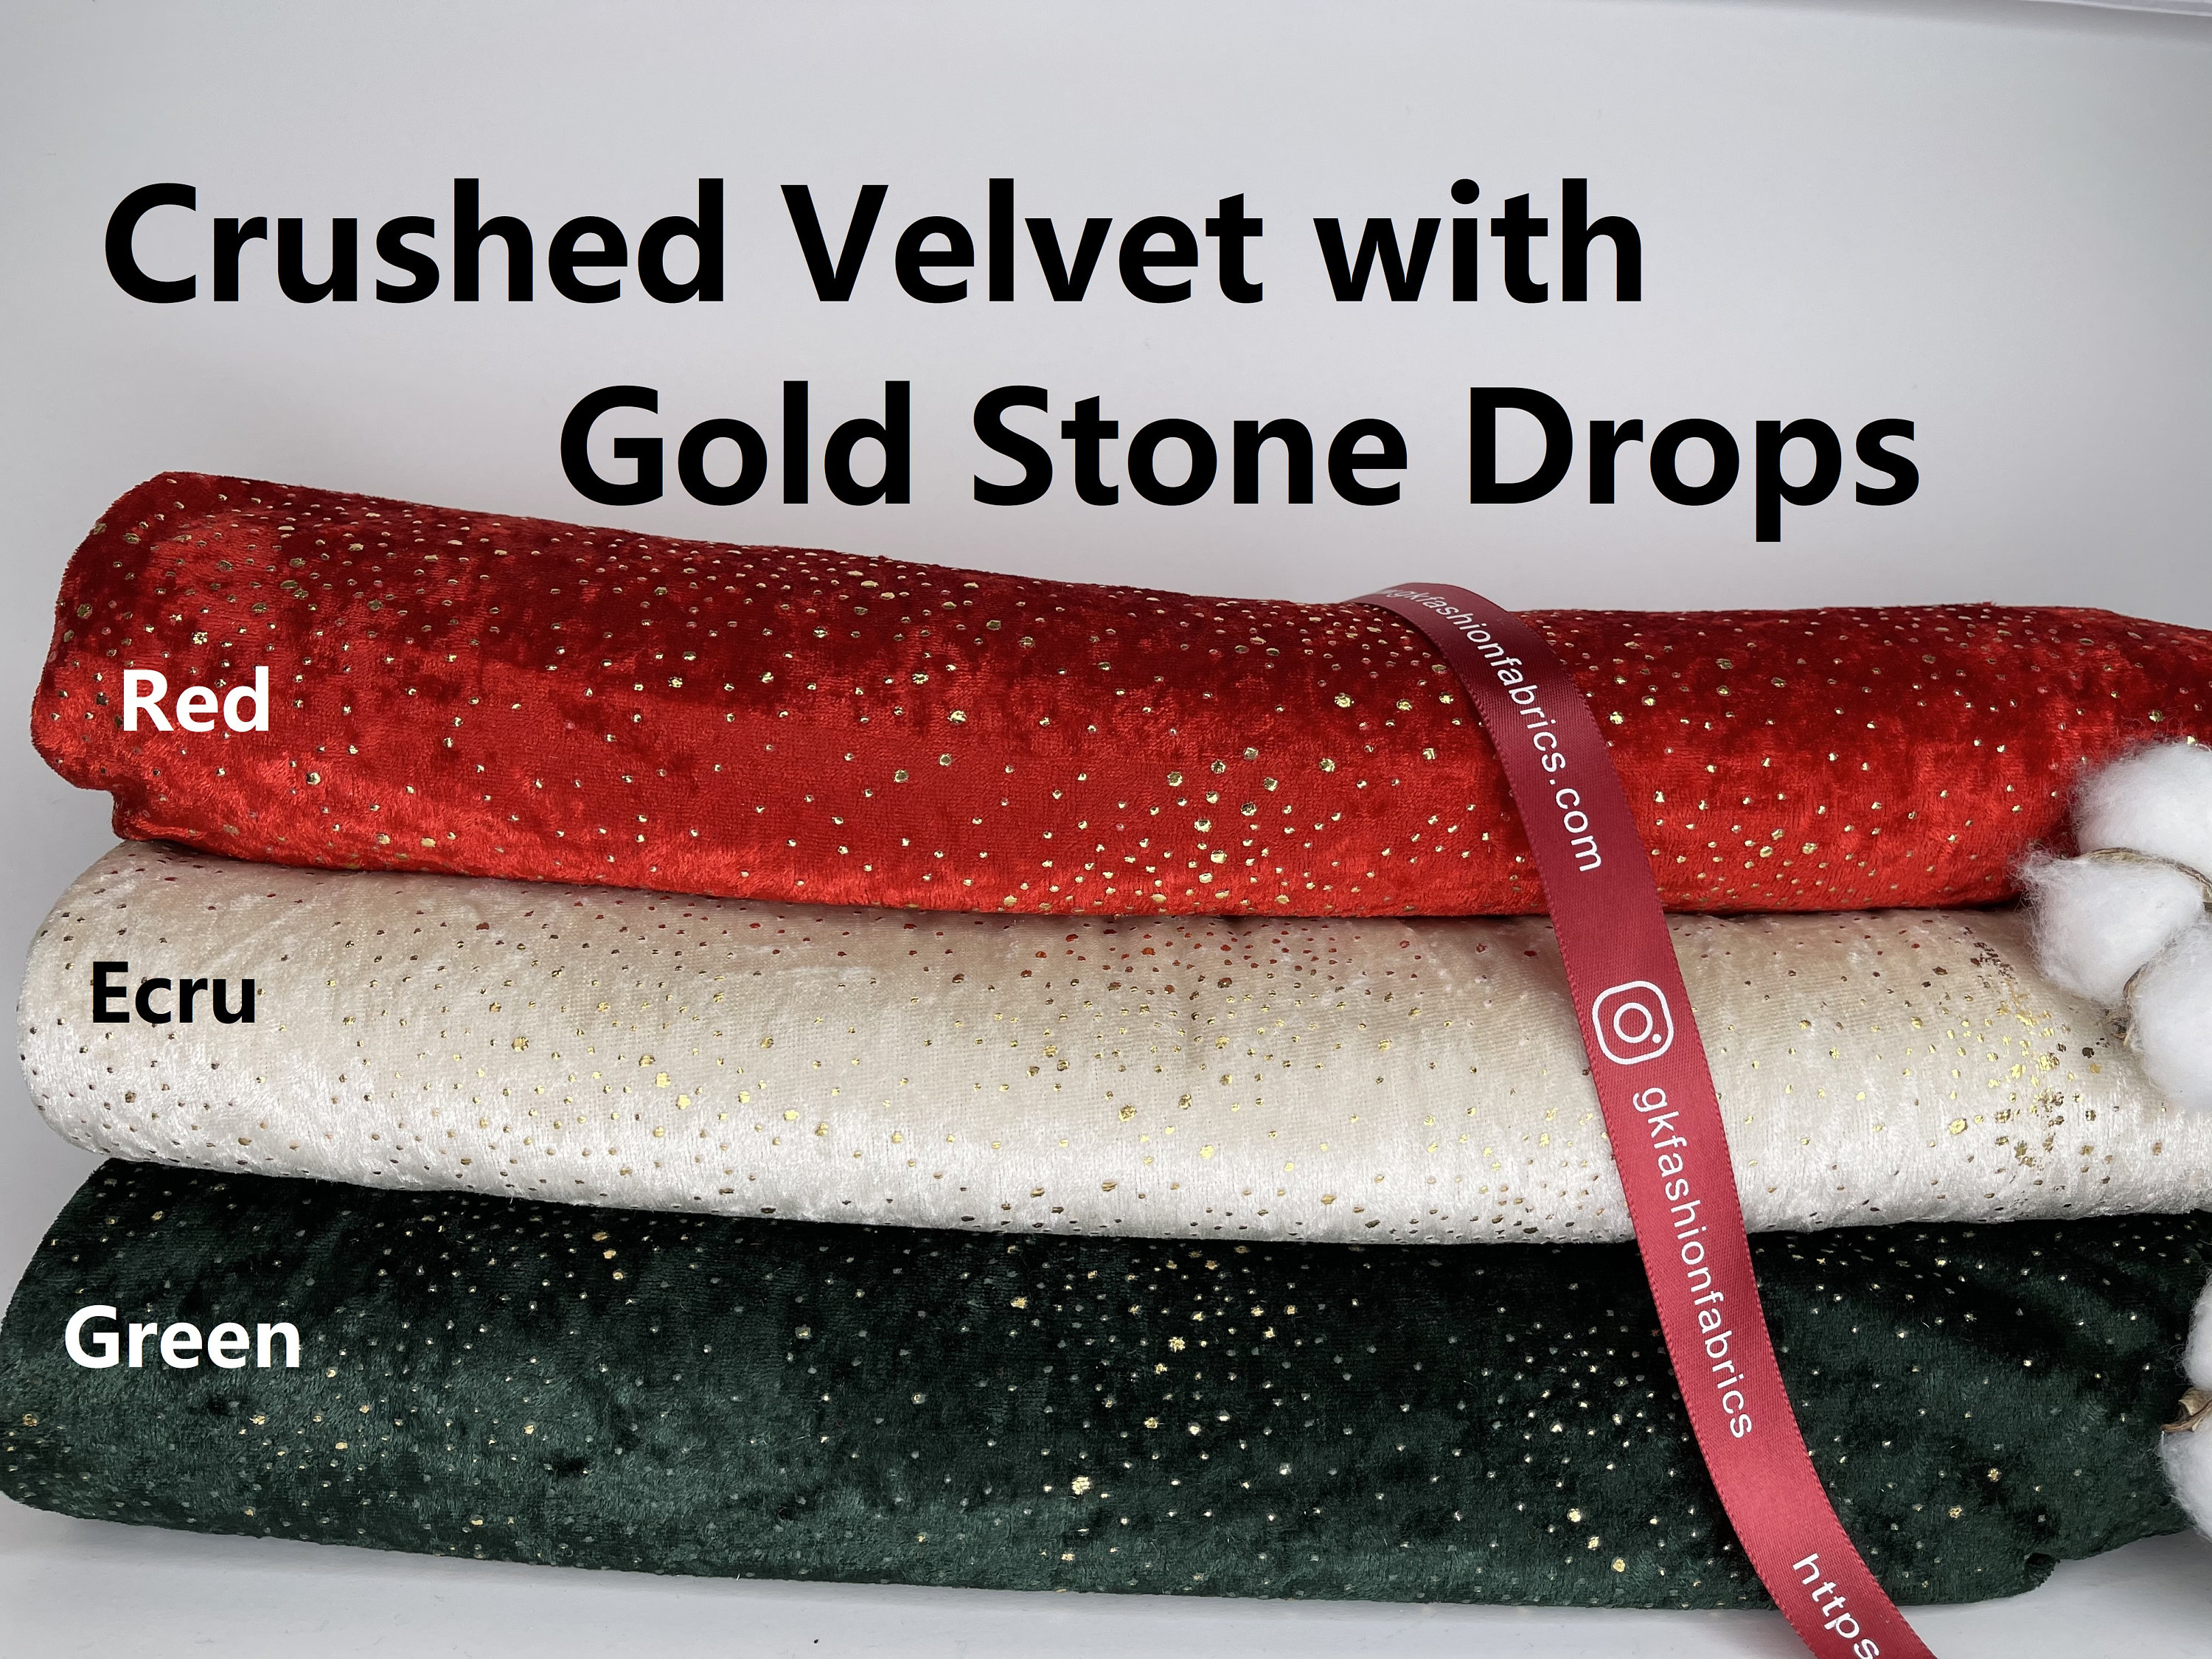 CLASSIC VELVET CRUSH RED Solid Color Velvet Upholstery Fabric